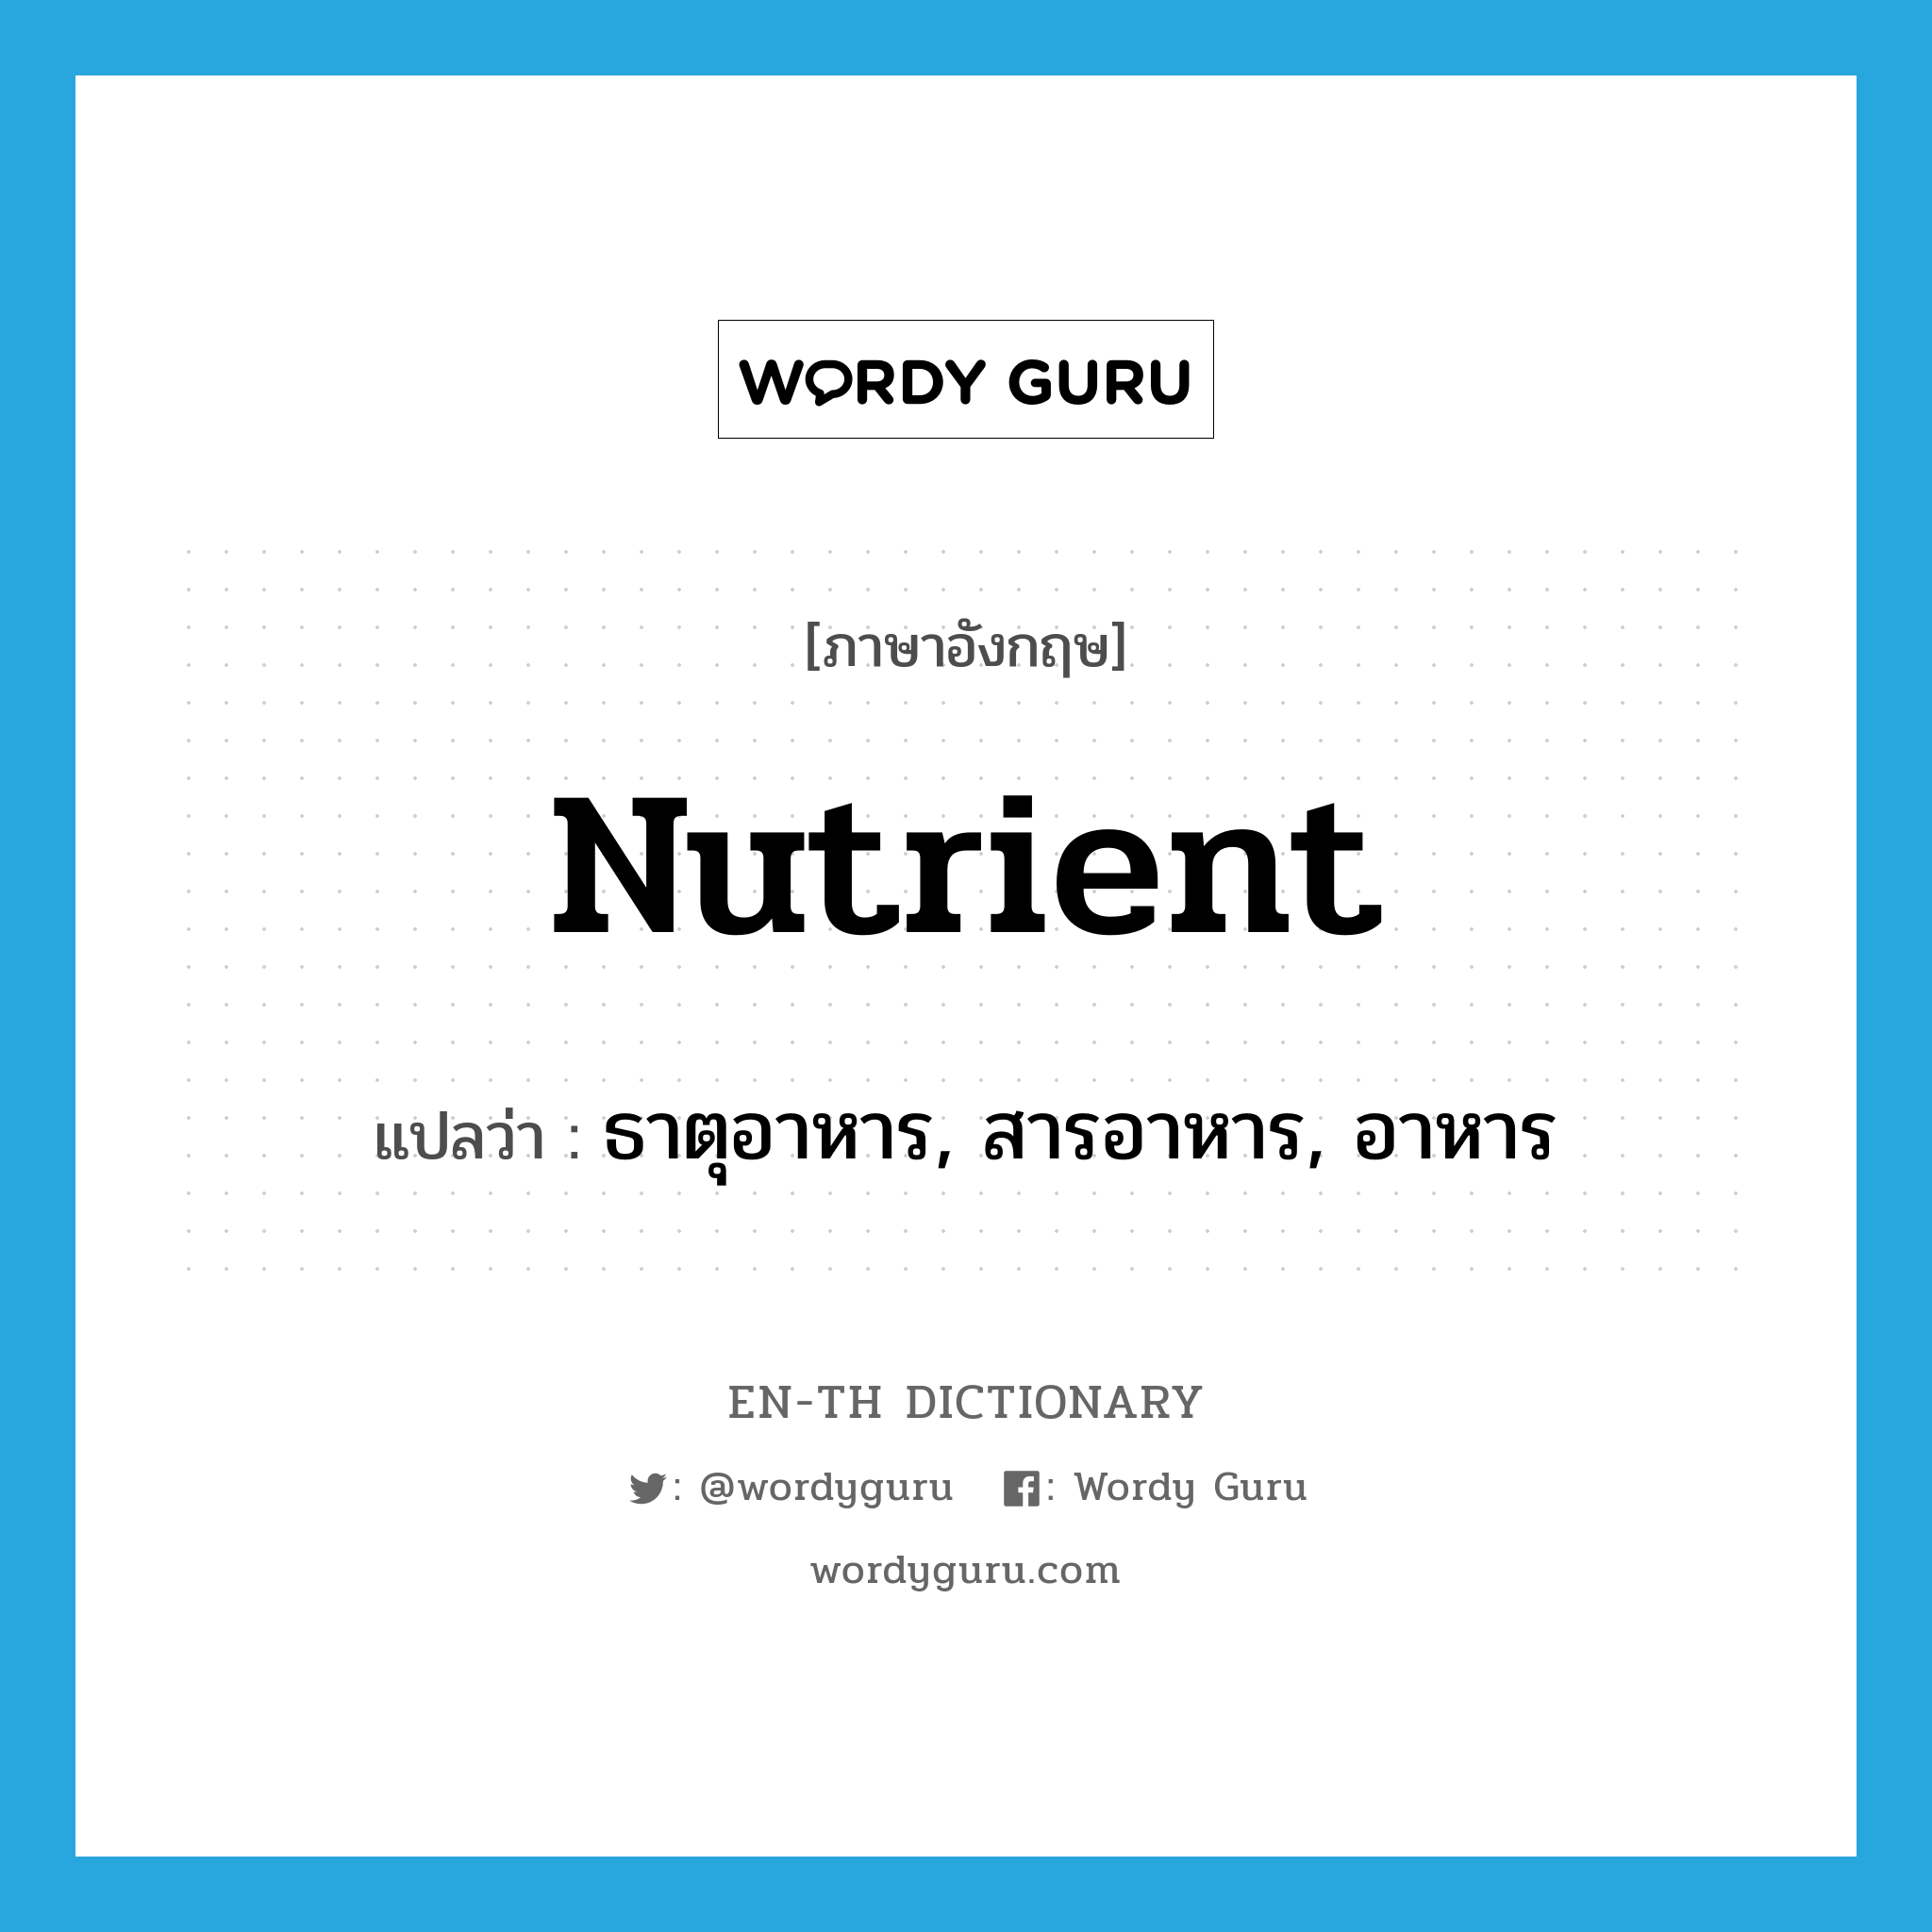 nutrient แปลว่า?, คำศัพท์ภาษาอังกฤษ nutrient แปลว่า ธาตุอาหาร, สารอาหาร, อาหาร ประเภท N หมวด N